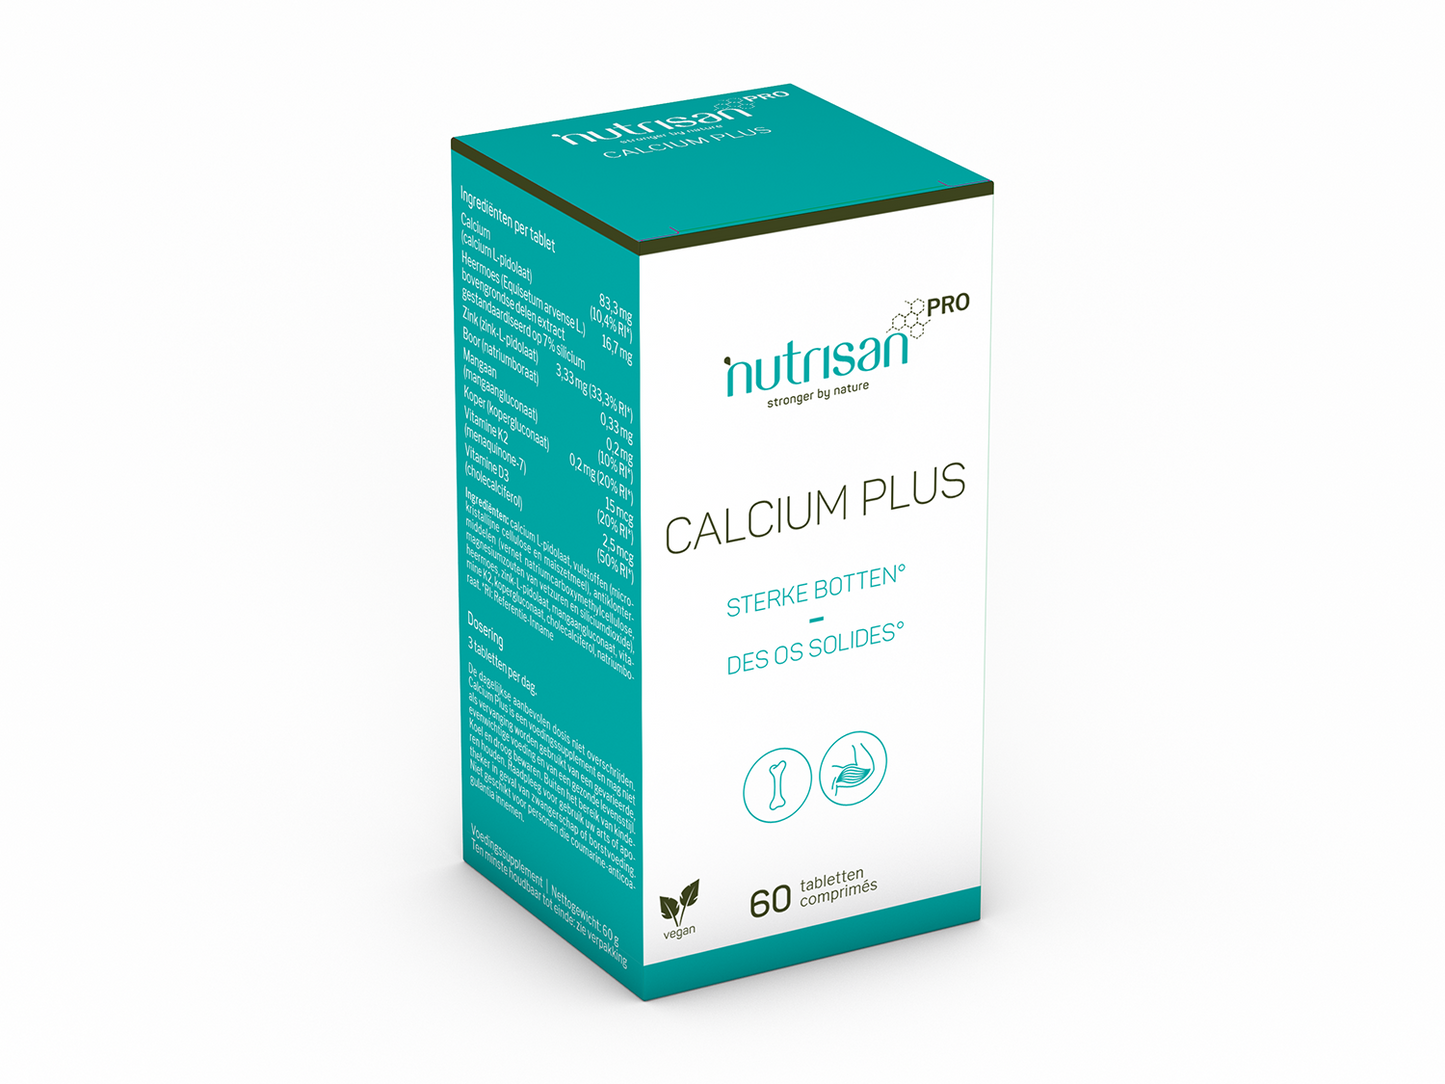 NutrisanPro Calcium Plus - Calcium supplement - 60 tabletten - Supplement voor sterke botten